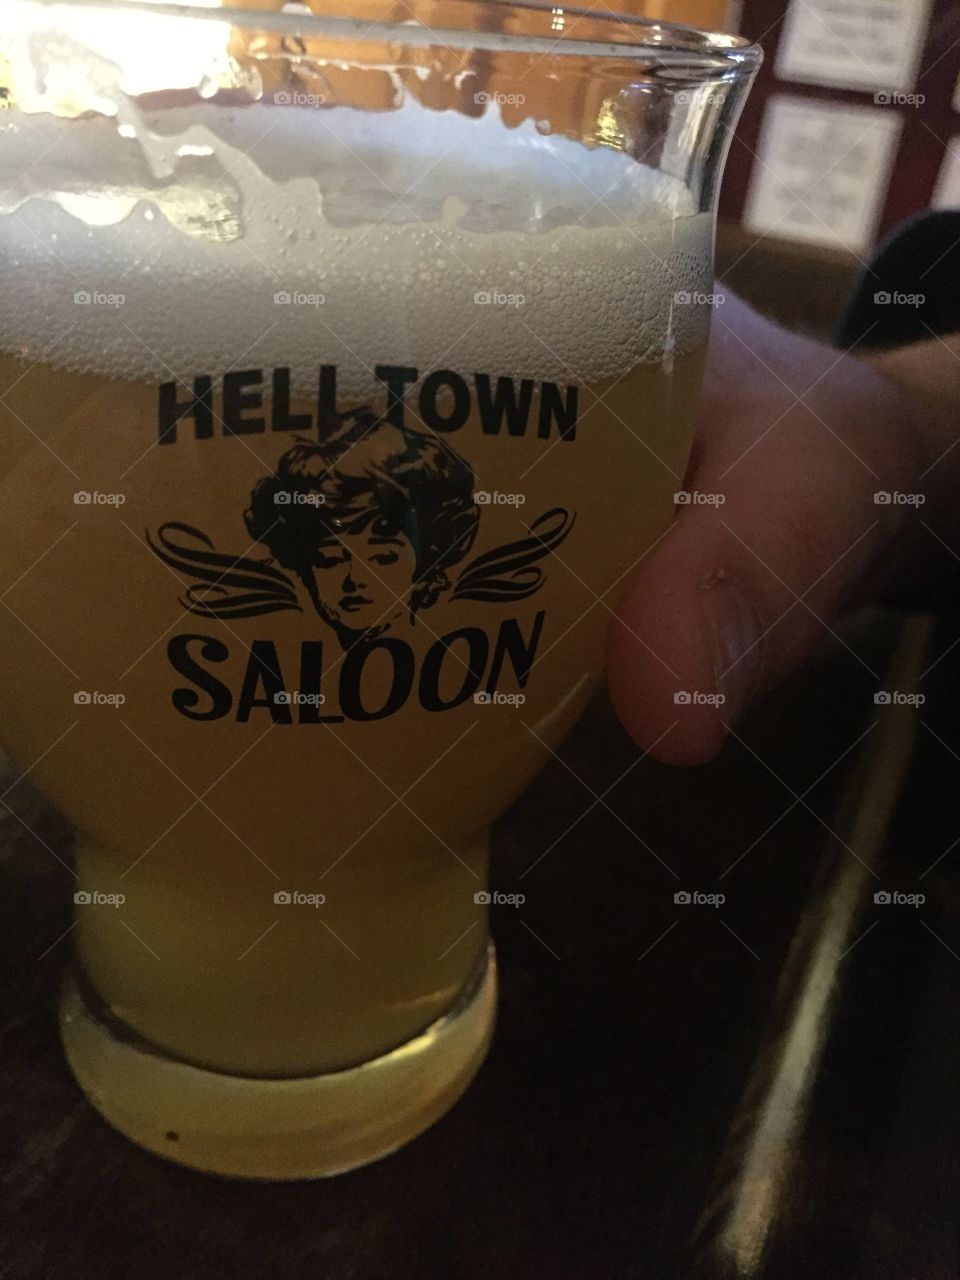 Refreshing beer in Hell Town Saloon mug 